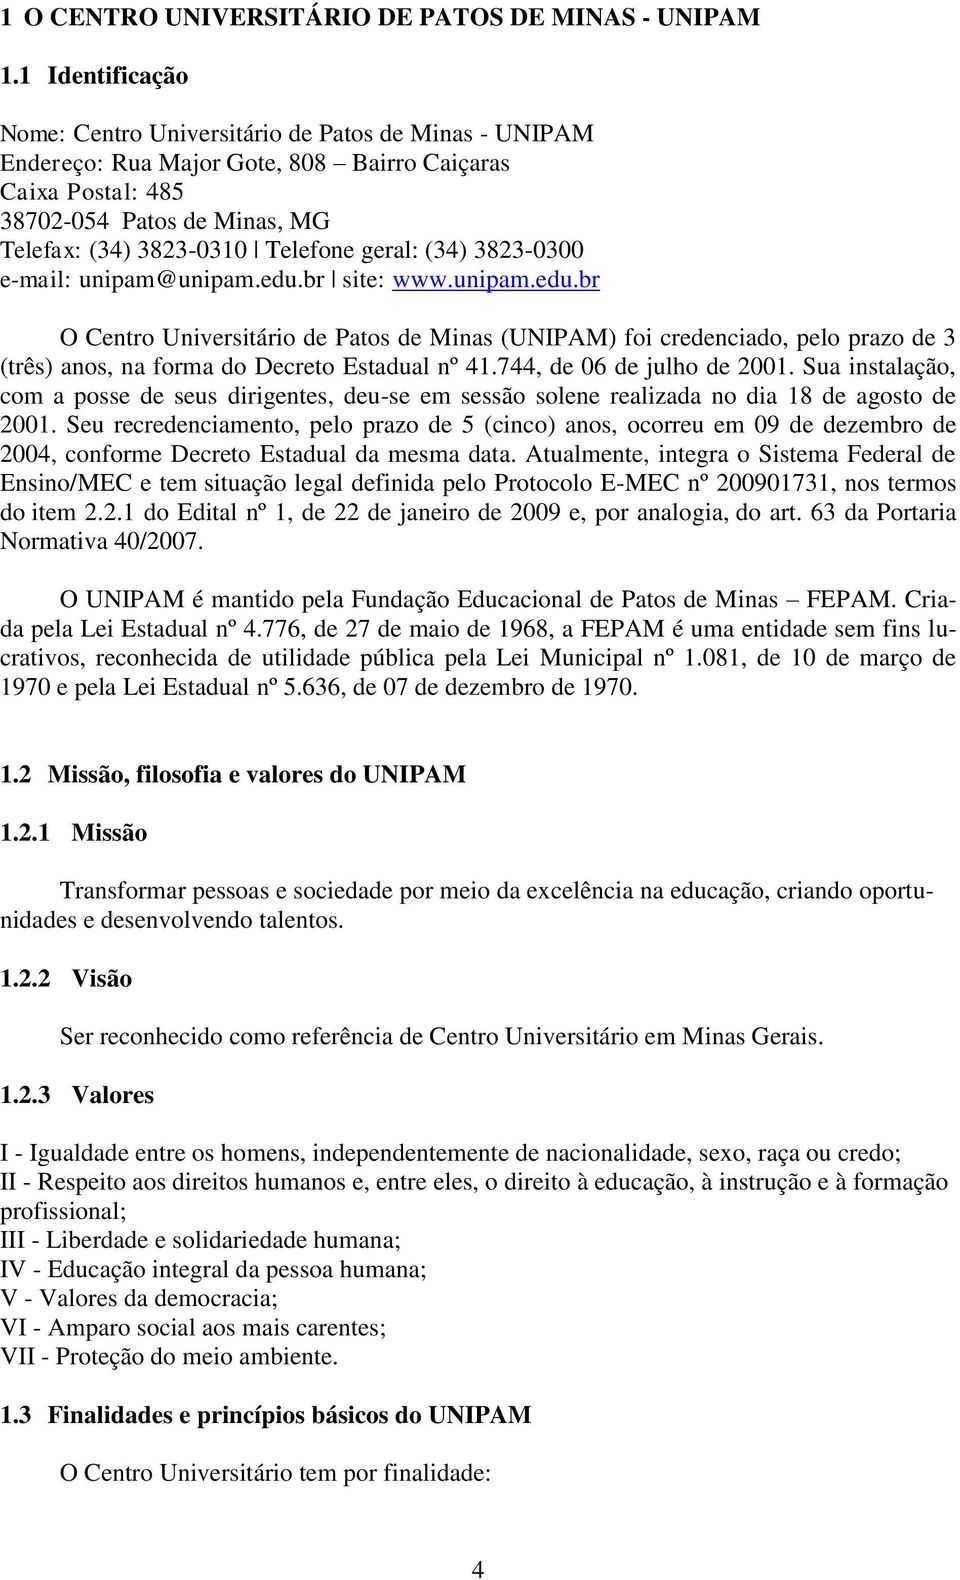 geral: (34) 3823-0300 e-mail: unipam@unipam.edu.br site: www.unipam.edu.br O Centro Universitário de Patos de Minas (UNIPAM) foi credenciado, pelo prazo de 3 (três) anos, na forma do Decreto Estadual nº 41.